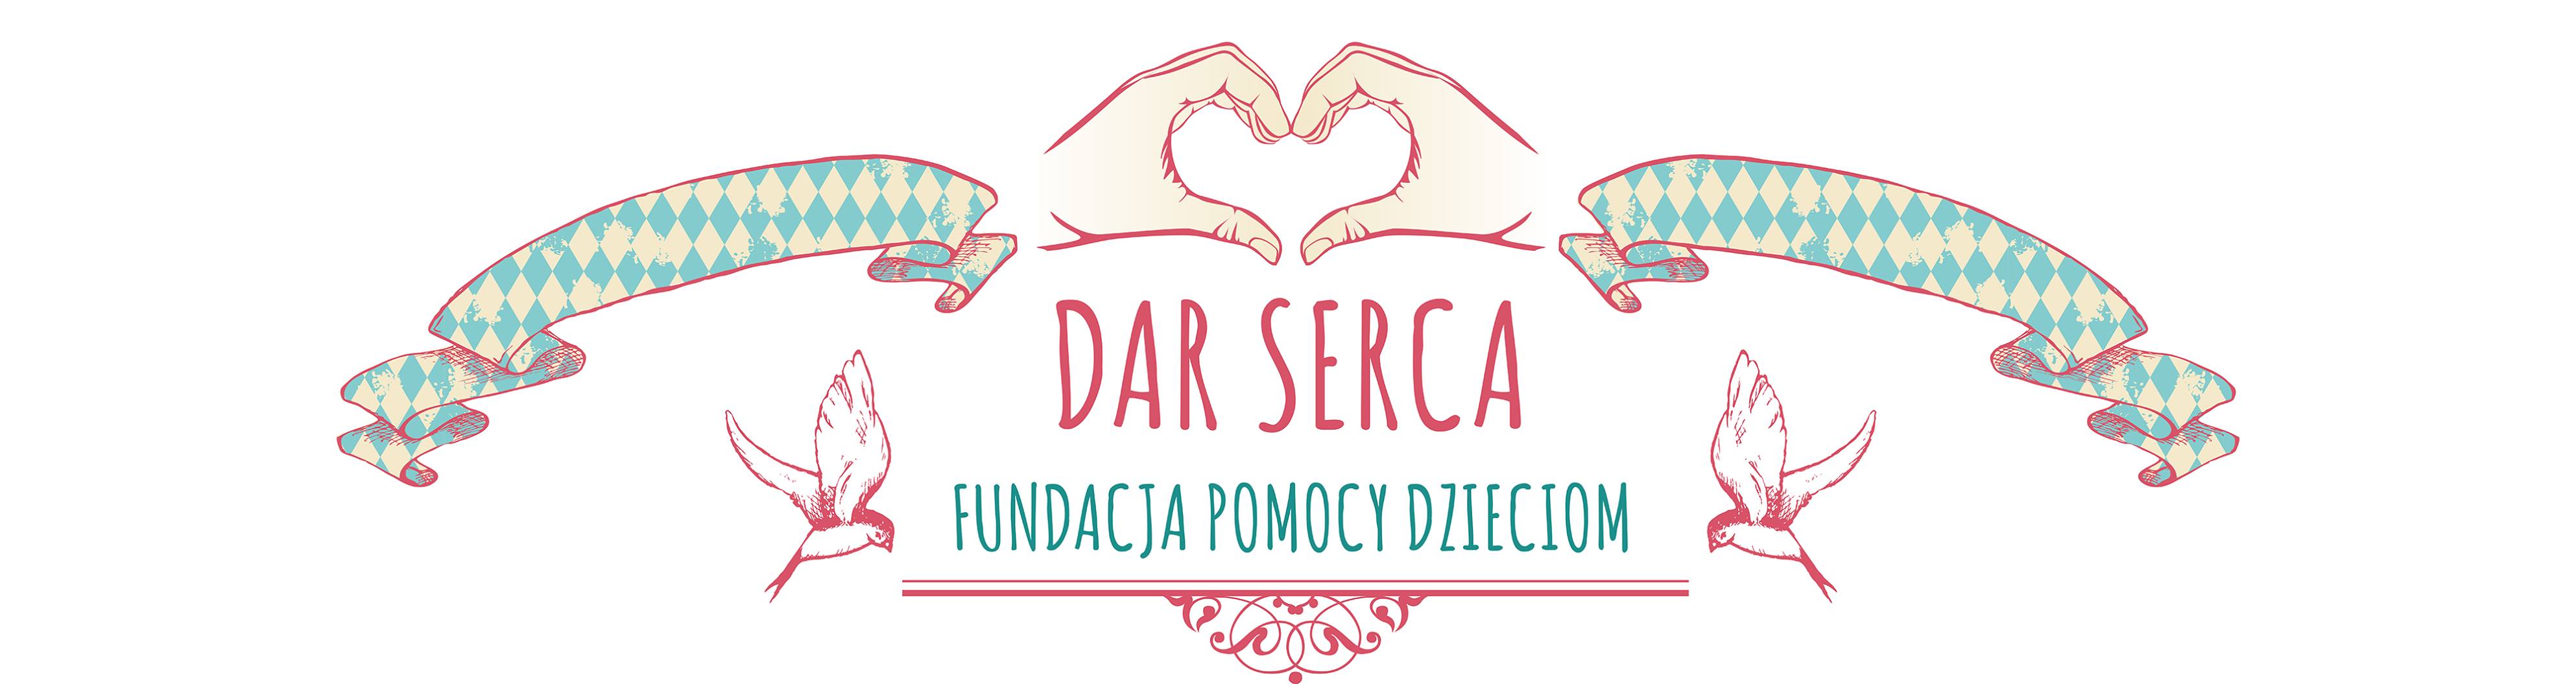 Fundacja Pomocy Dzieciom DAR SERCA